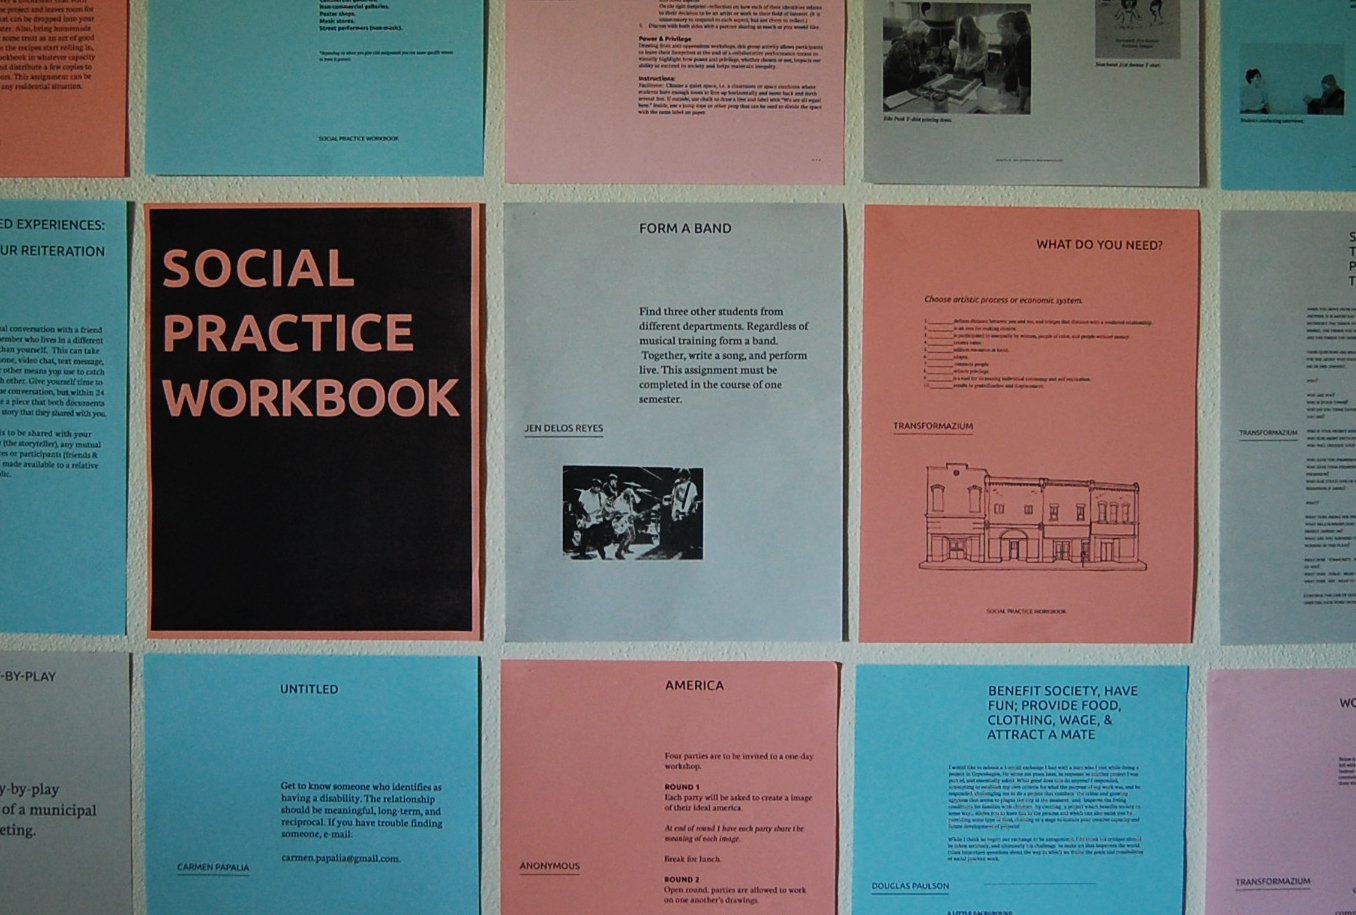 Social Practice Workbook Press release